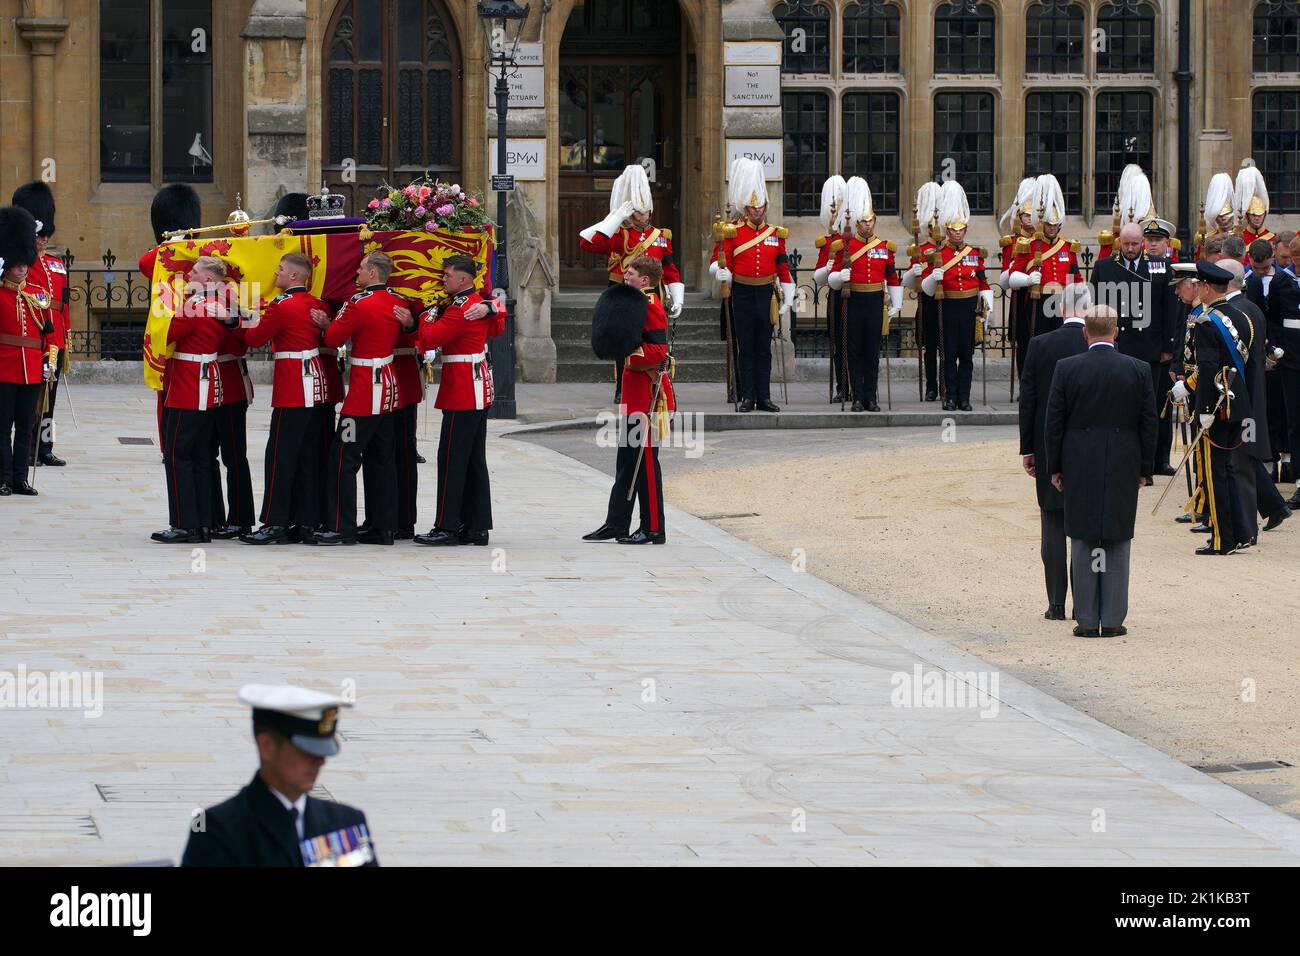 (De gauche à droite) le roi Charles III, la princesse royale, le duc d'York et le comte de Wessex, suivant le cercueil de la reine Elizabeth II, drapé dans le Standard royal avec la couronne de l'État impérial et l'orbe et le sceptre du souverain, Dans le défilé de cérémonie durant son funérailles d'État à l'abbaye de Westminster, Londres. Date de la photo: Lundi 19 septembre 2022. Banque D'Images